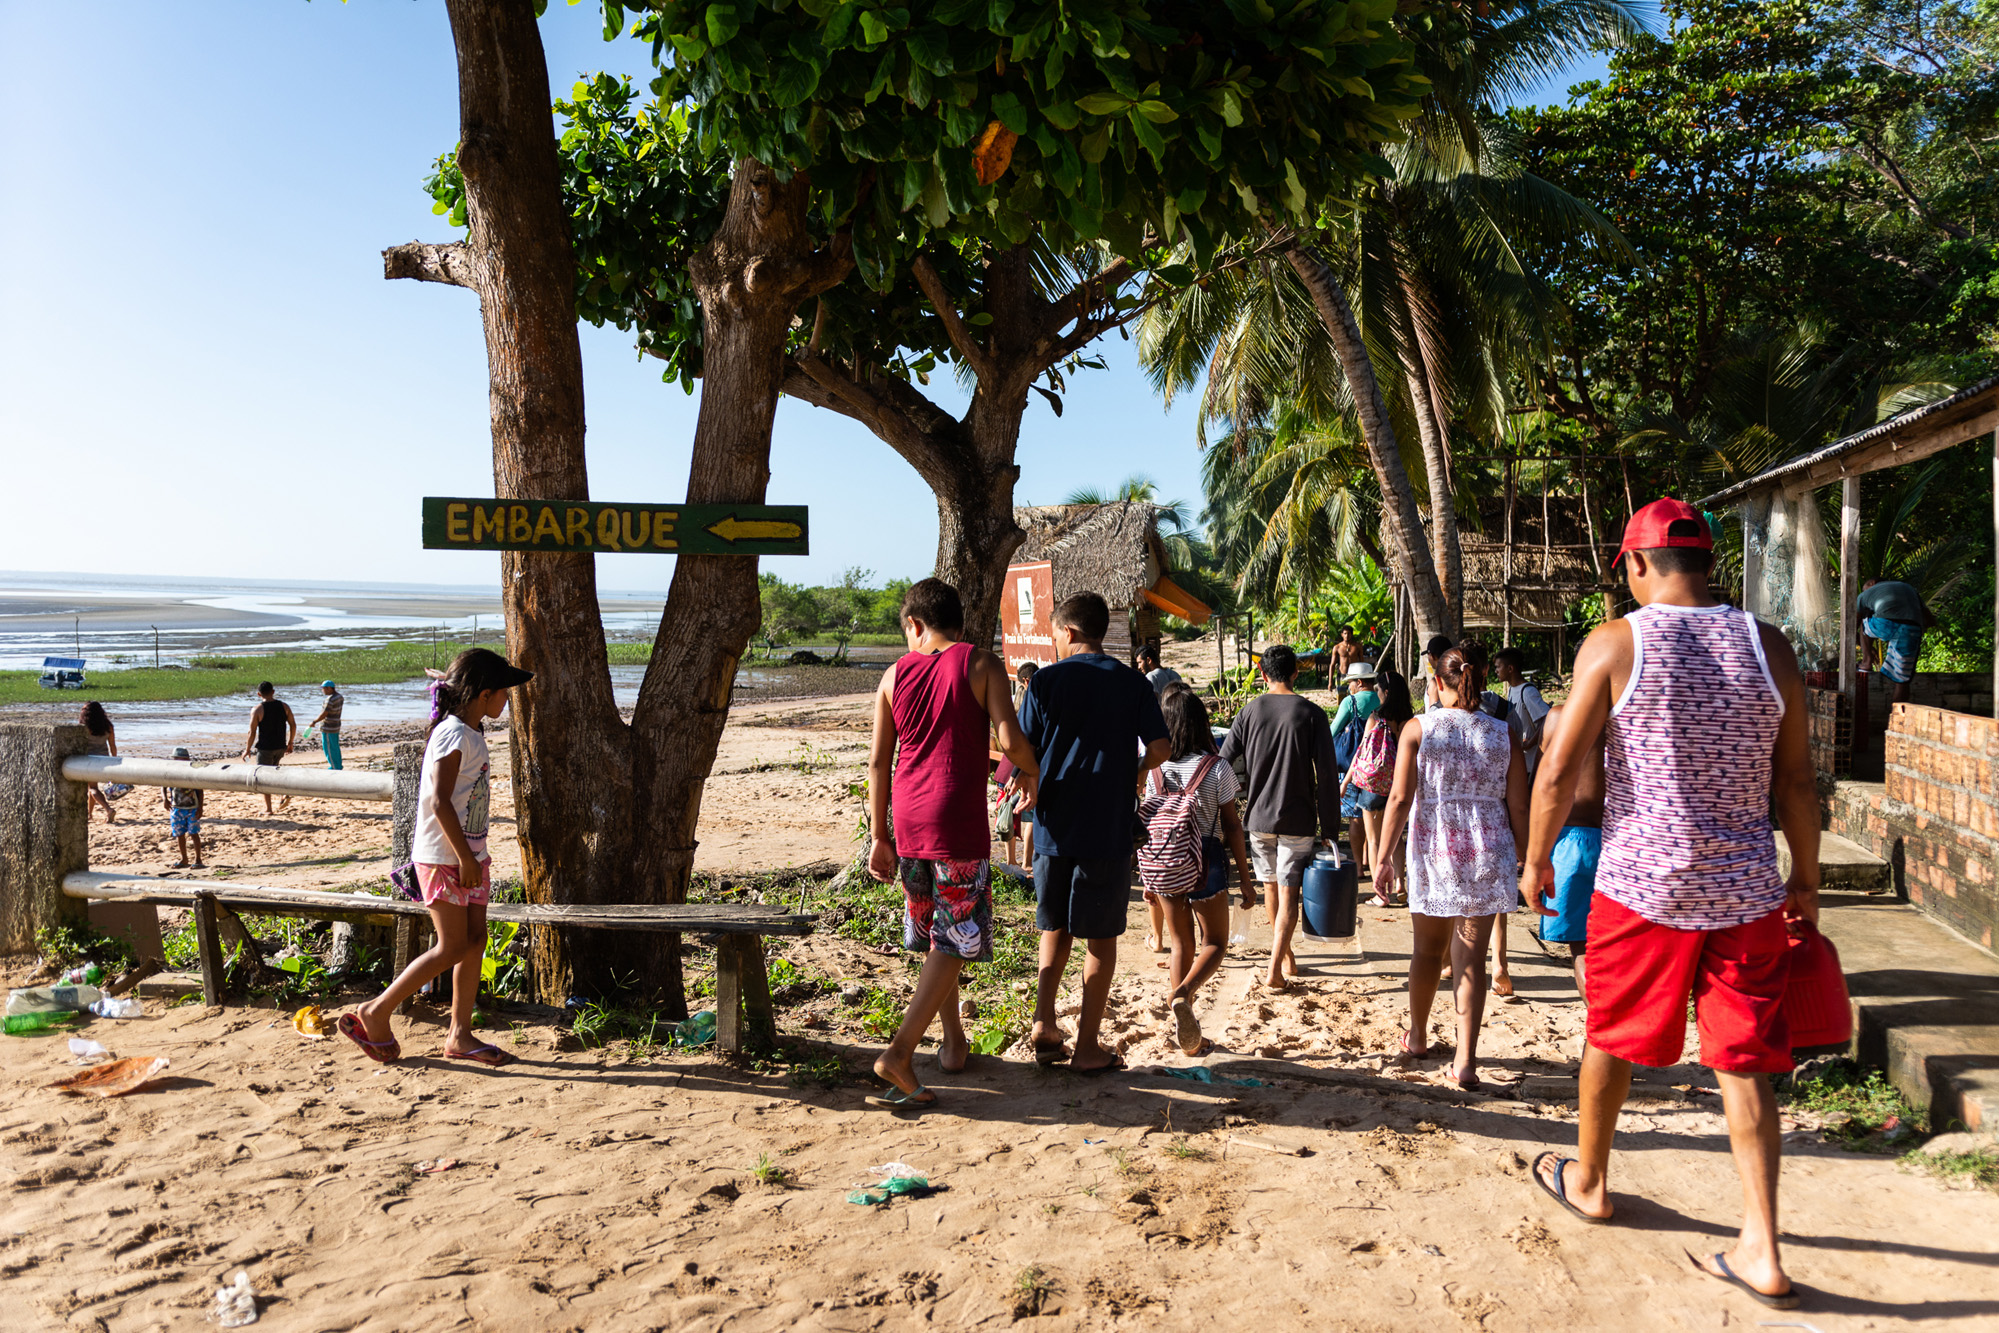 Aglomeração durante o embarque e o desembarque de banhistas nas praias de Fortalezinha: prefeitura liberou entrada de turistas no fim de julho (Foto: Cícero Pedrosa Neto/Amazônia Real)